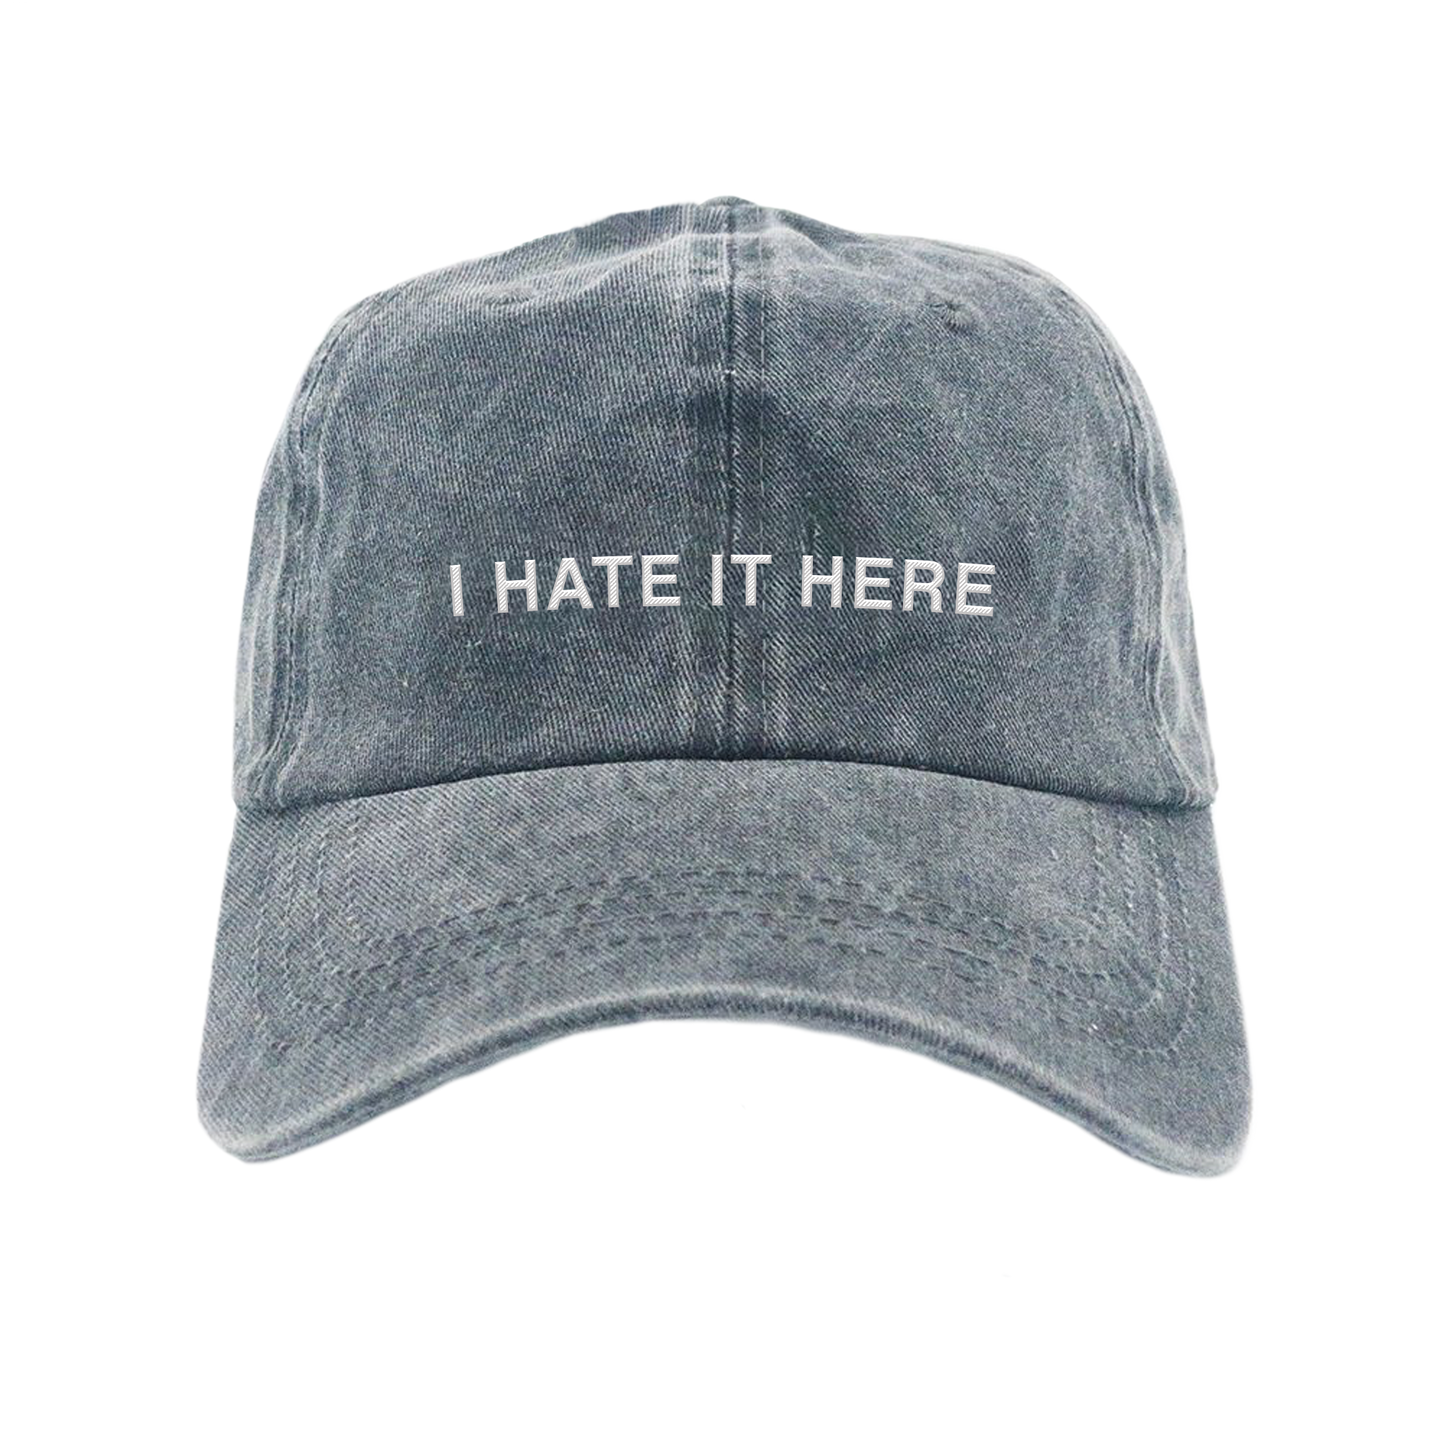 Hate It Here Vintage Dad Hat